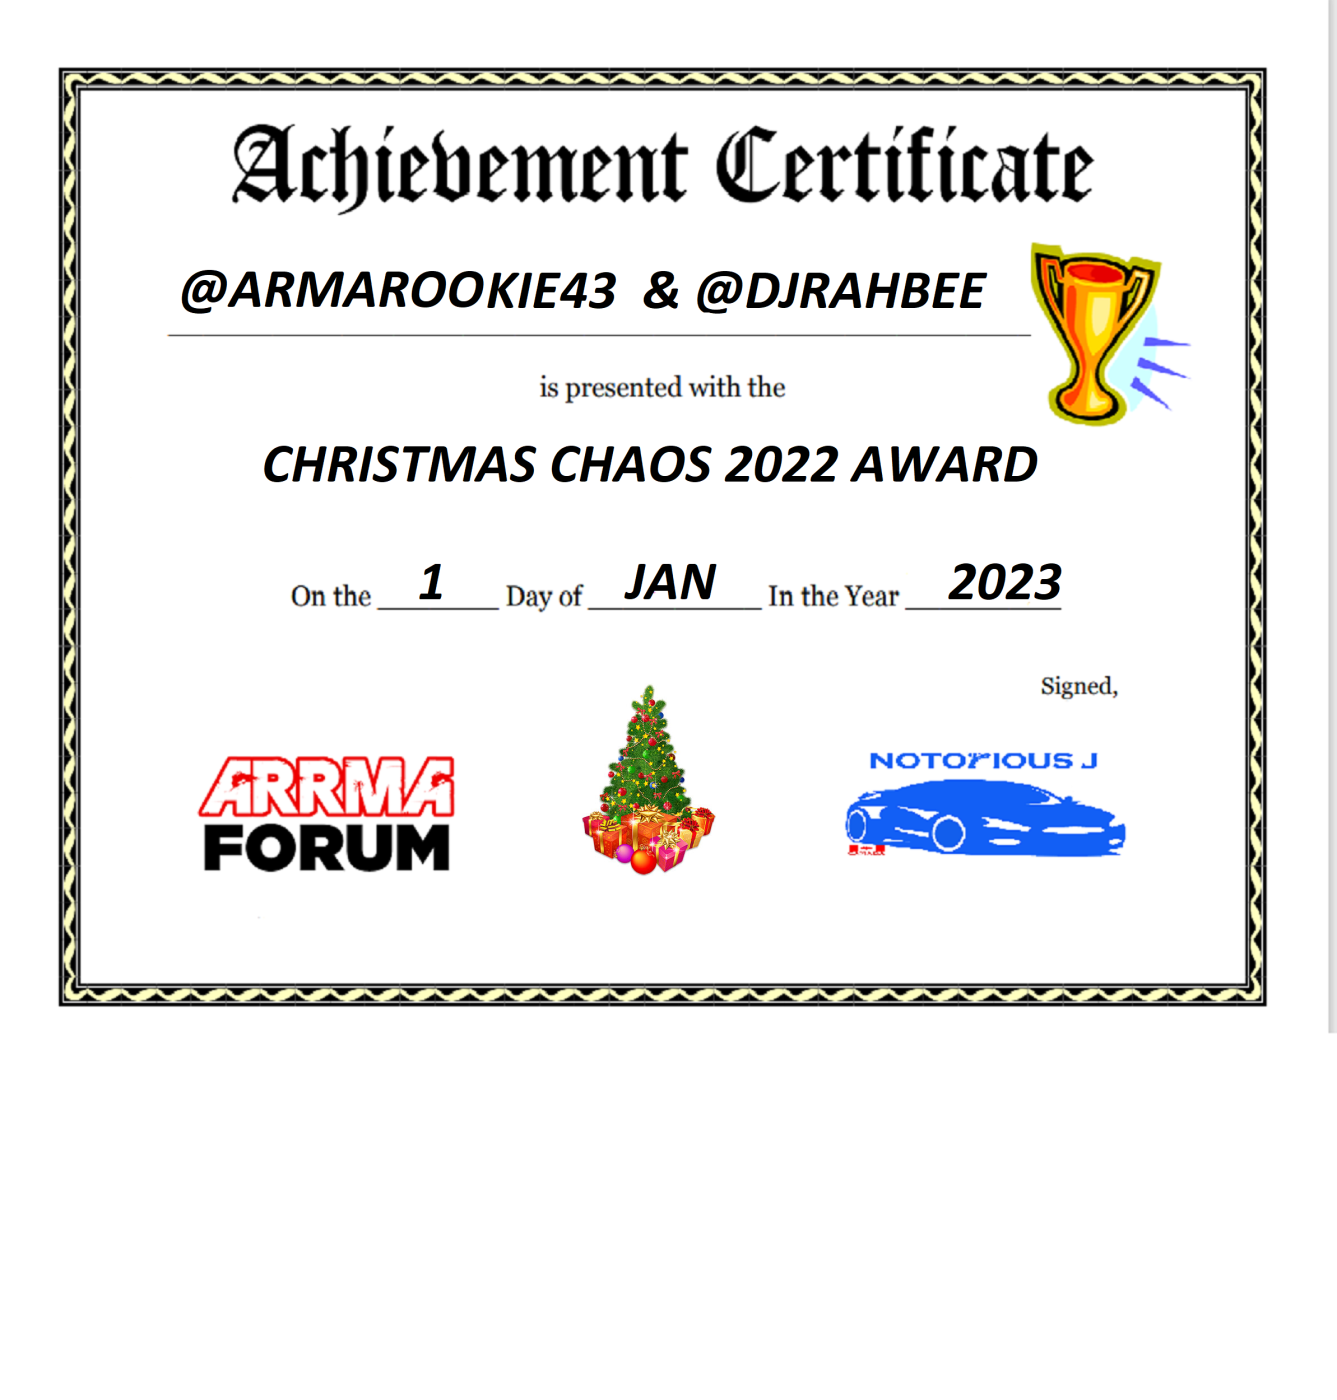 Arrma Forum award - Copy.png